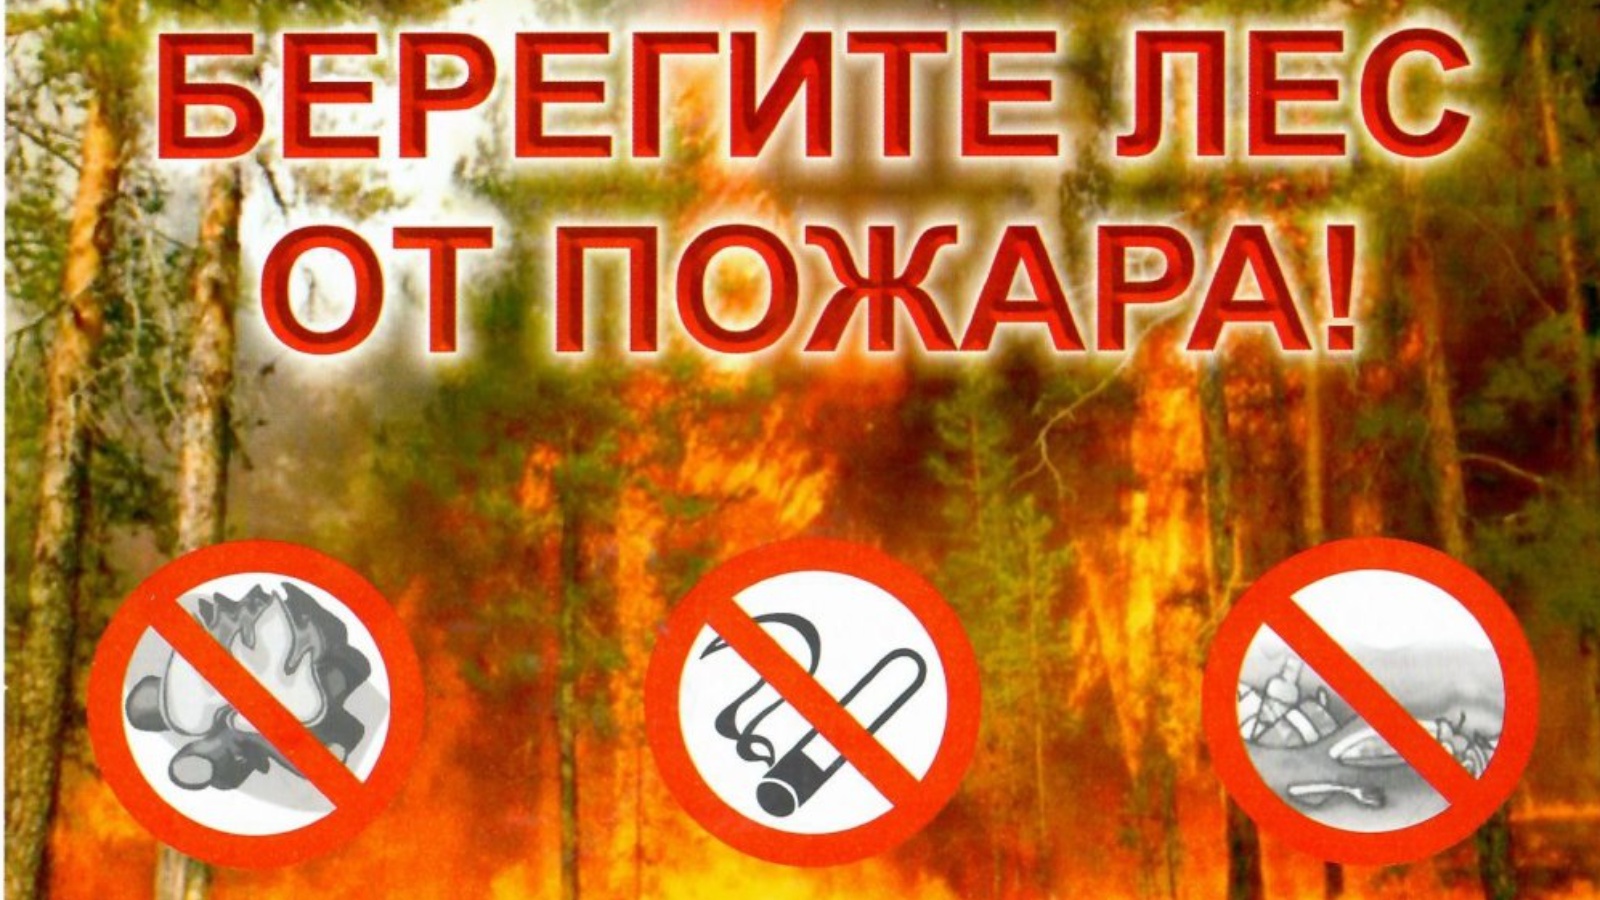 Сохраним лес от пожаров!.